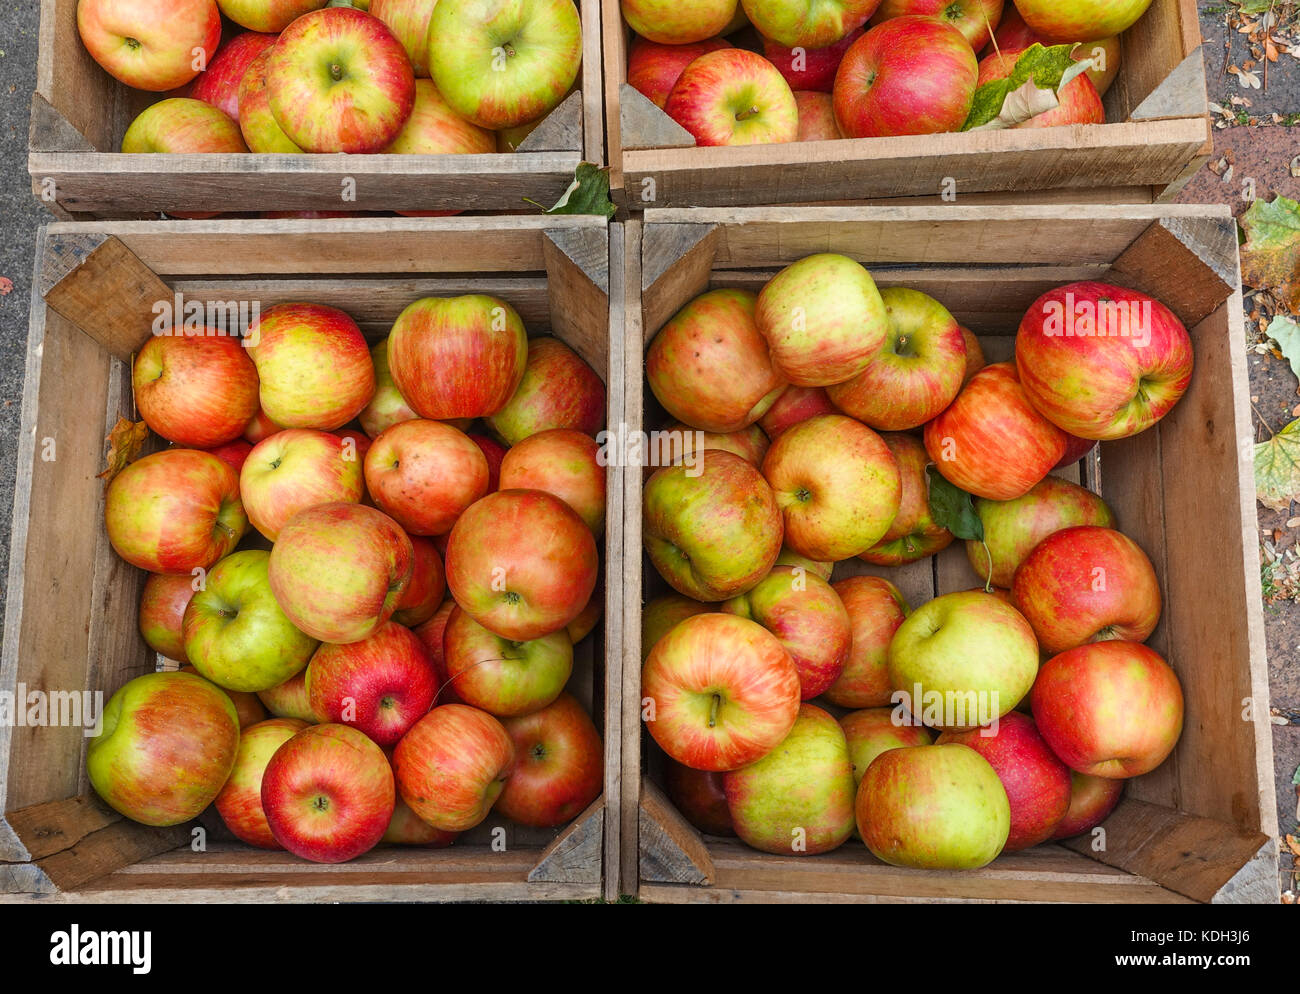 Apples, Goldrenette, Reinette, in wooden box on farmers market. Stock Photo